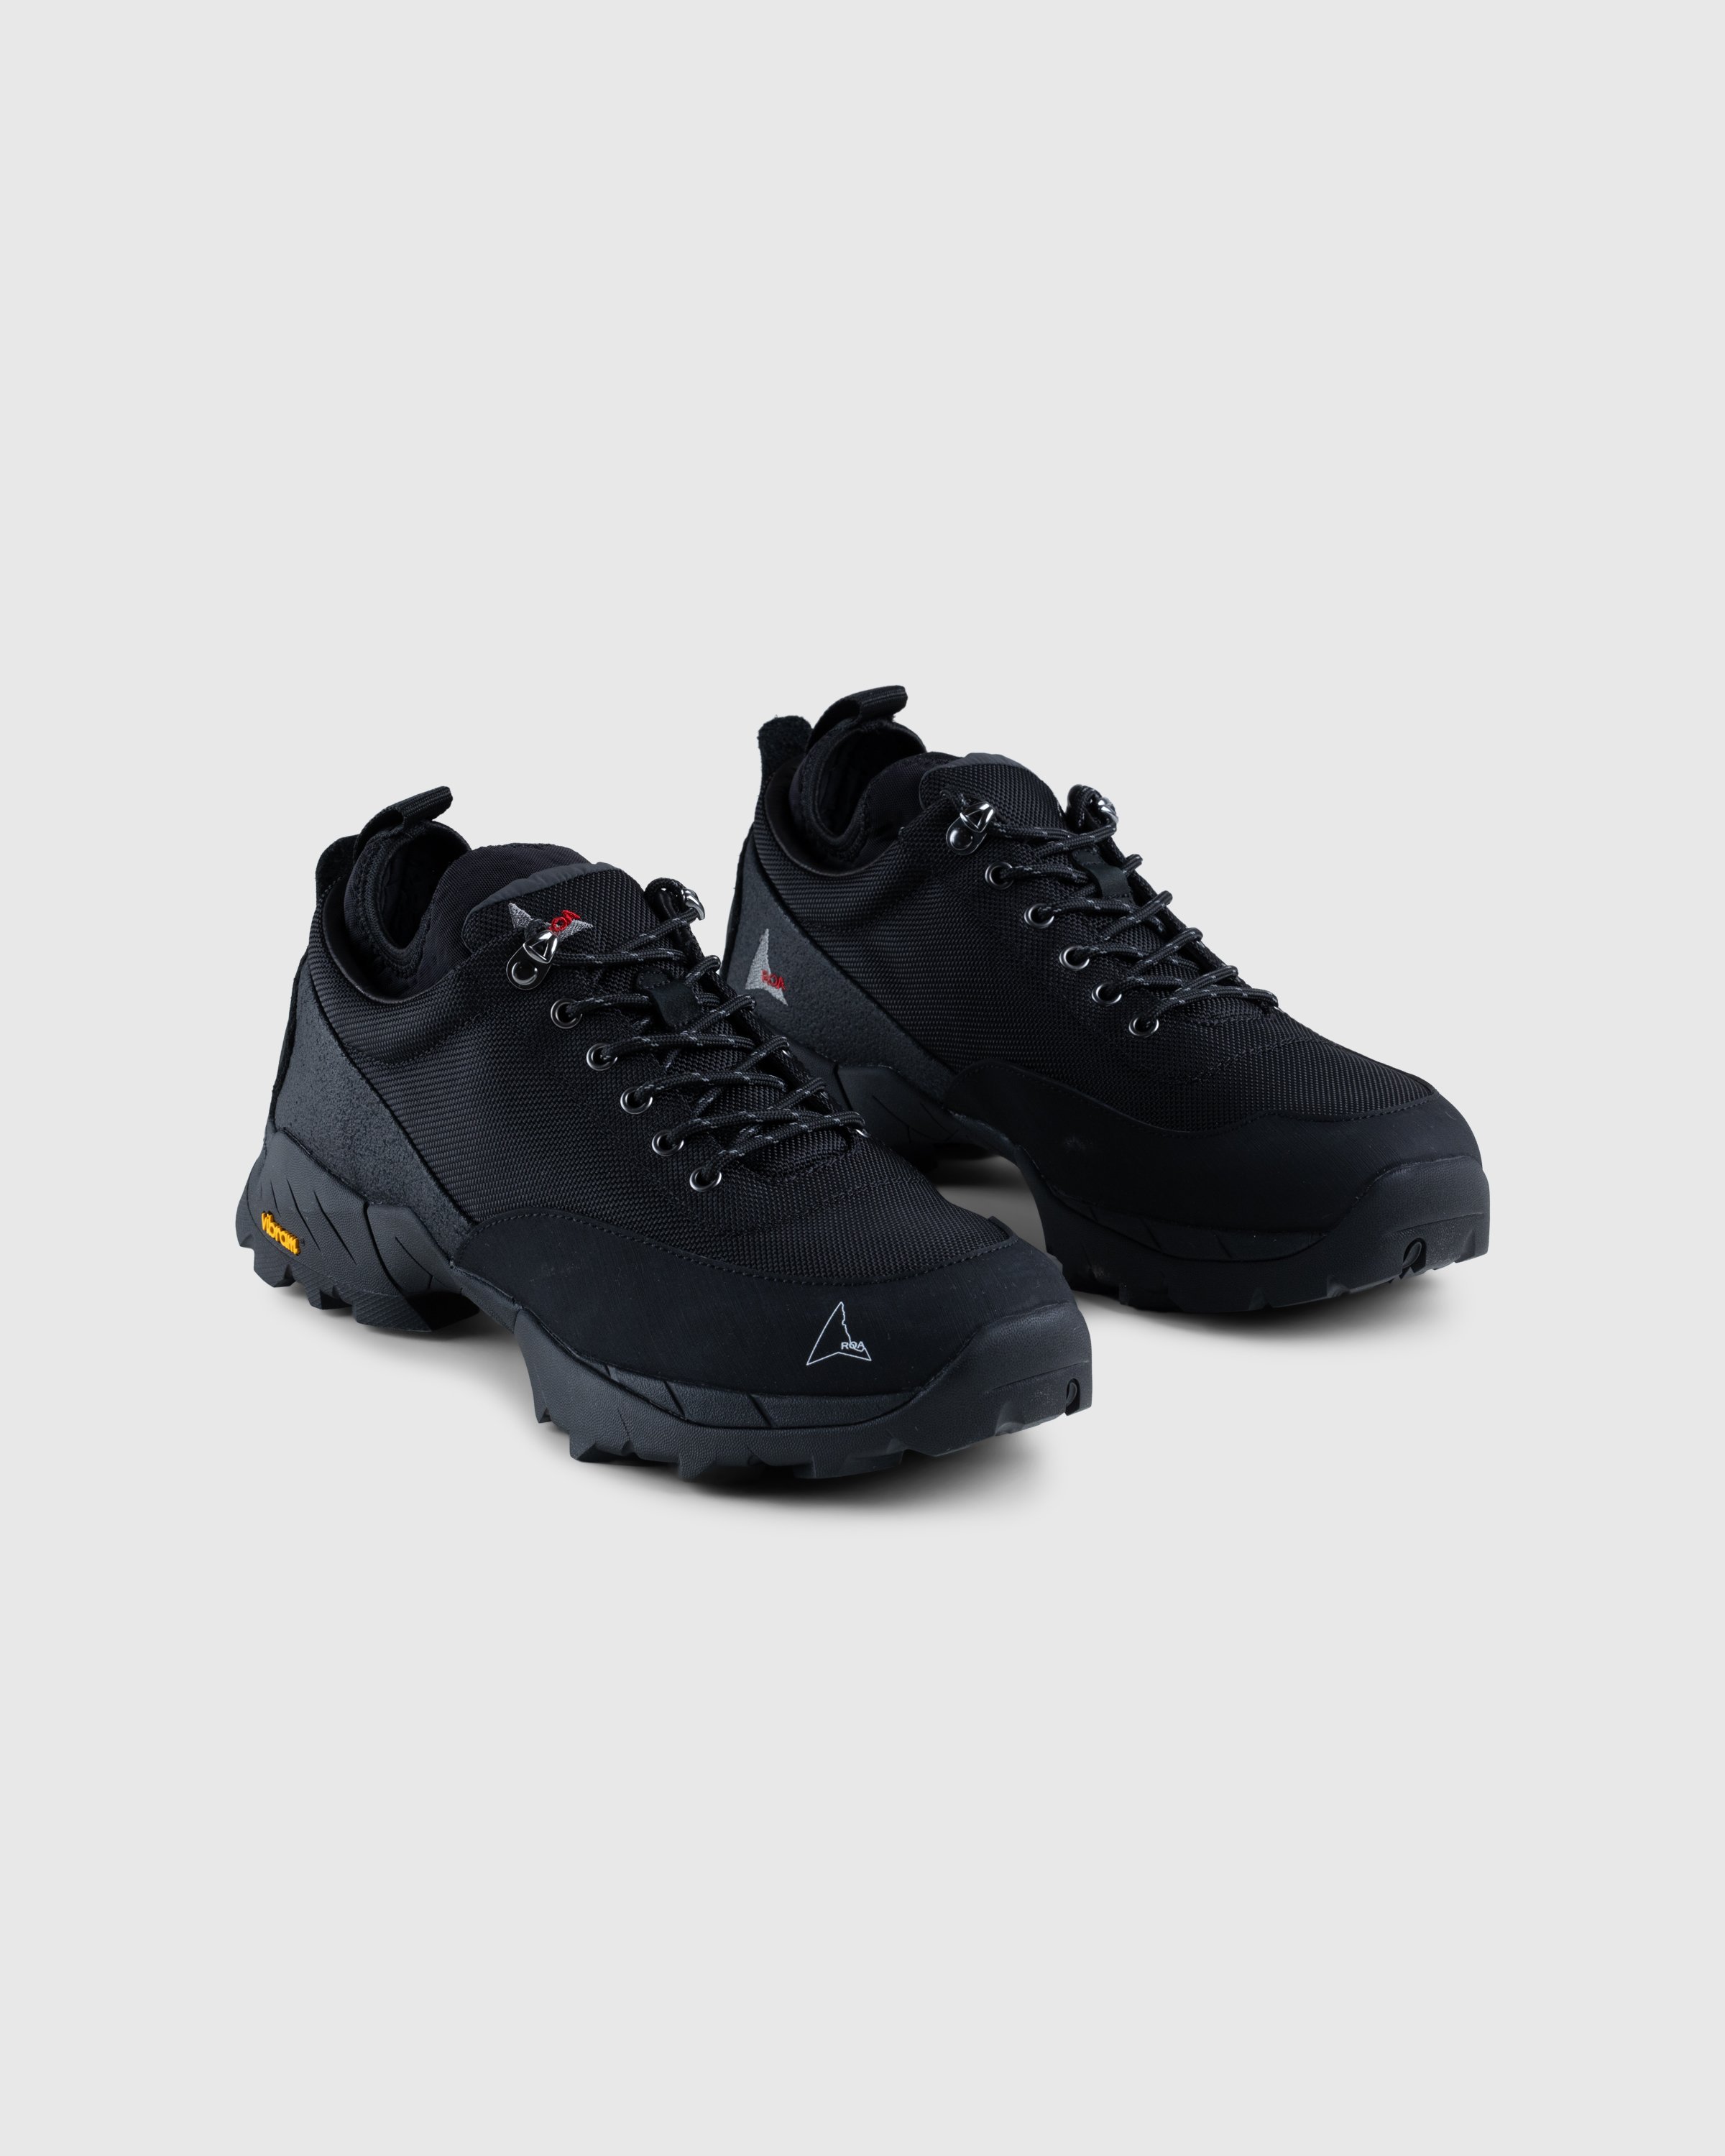 ROA - Neal Sneakers Black - Footwear - Black - Image 3